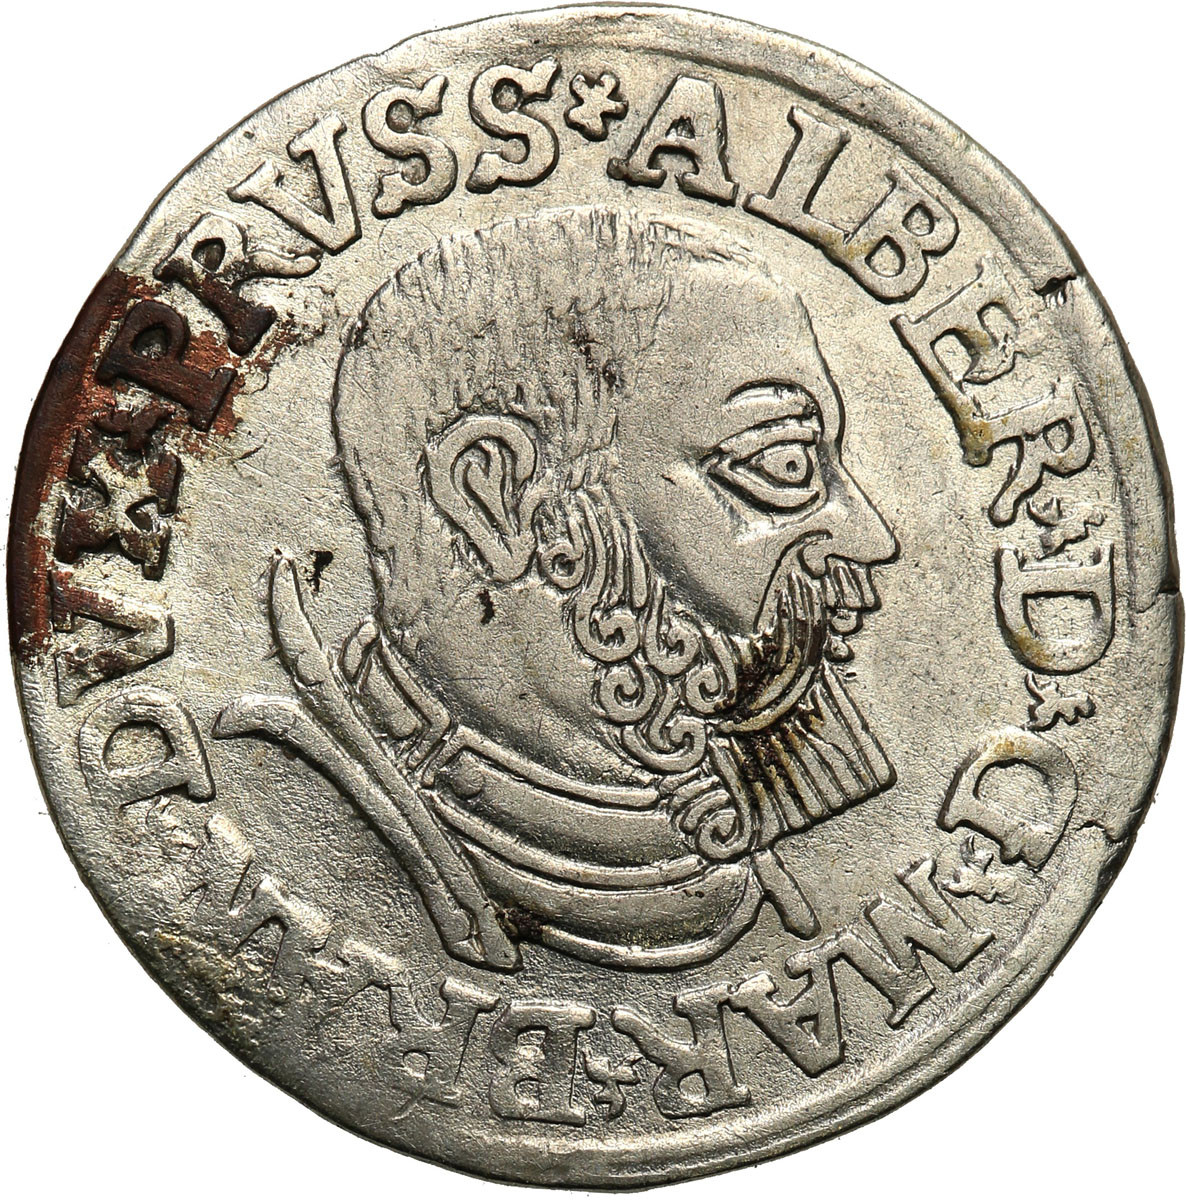 Prusy Książęce. Albrecht Hohenzollern. Trojak (3 grosze) 1537, Królewiec